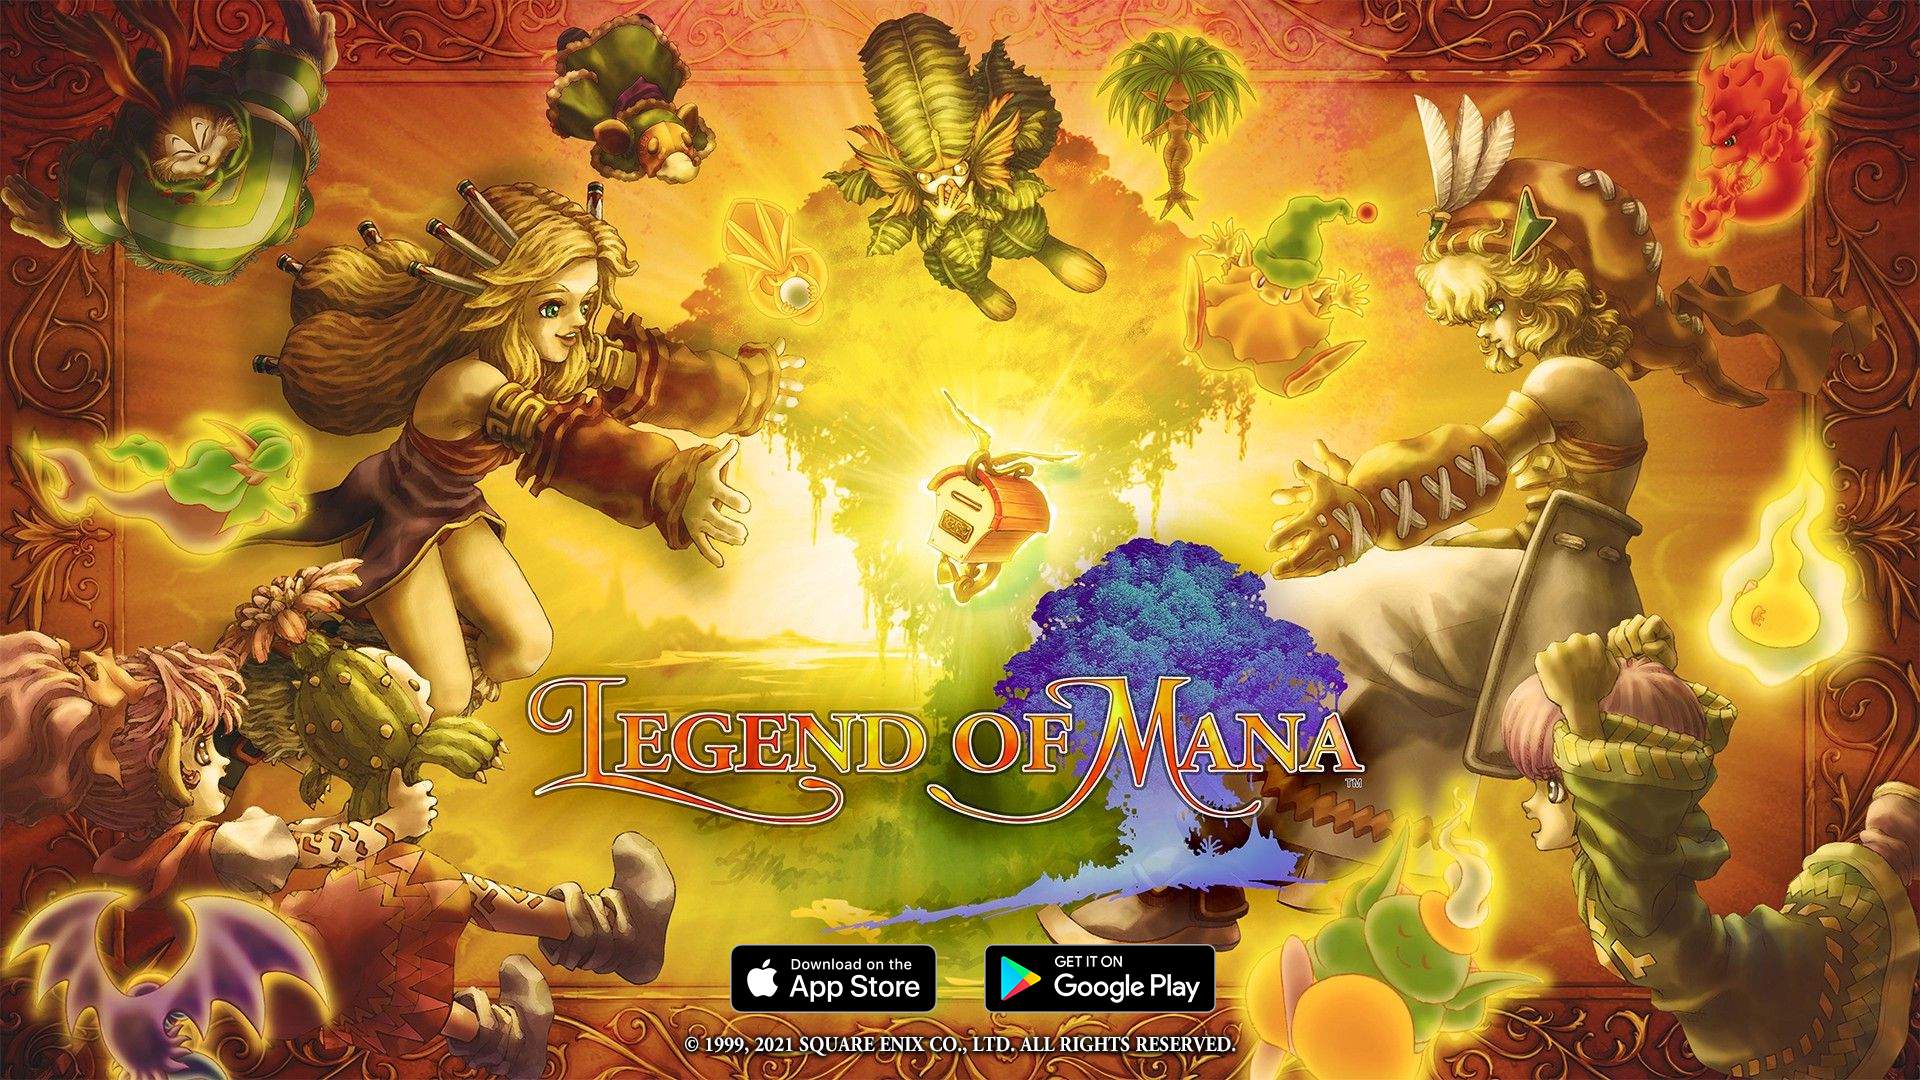 Legend of Mana logo and artwork